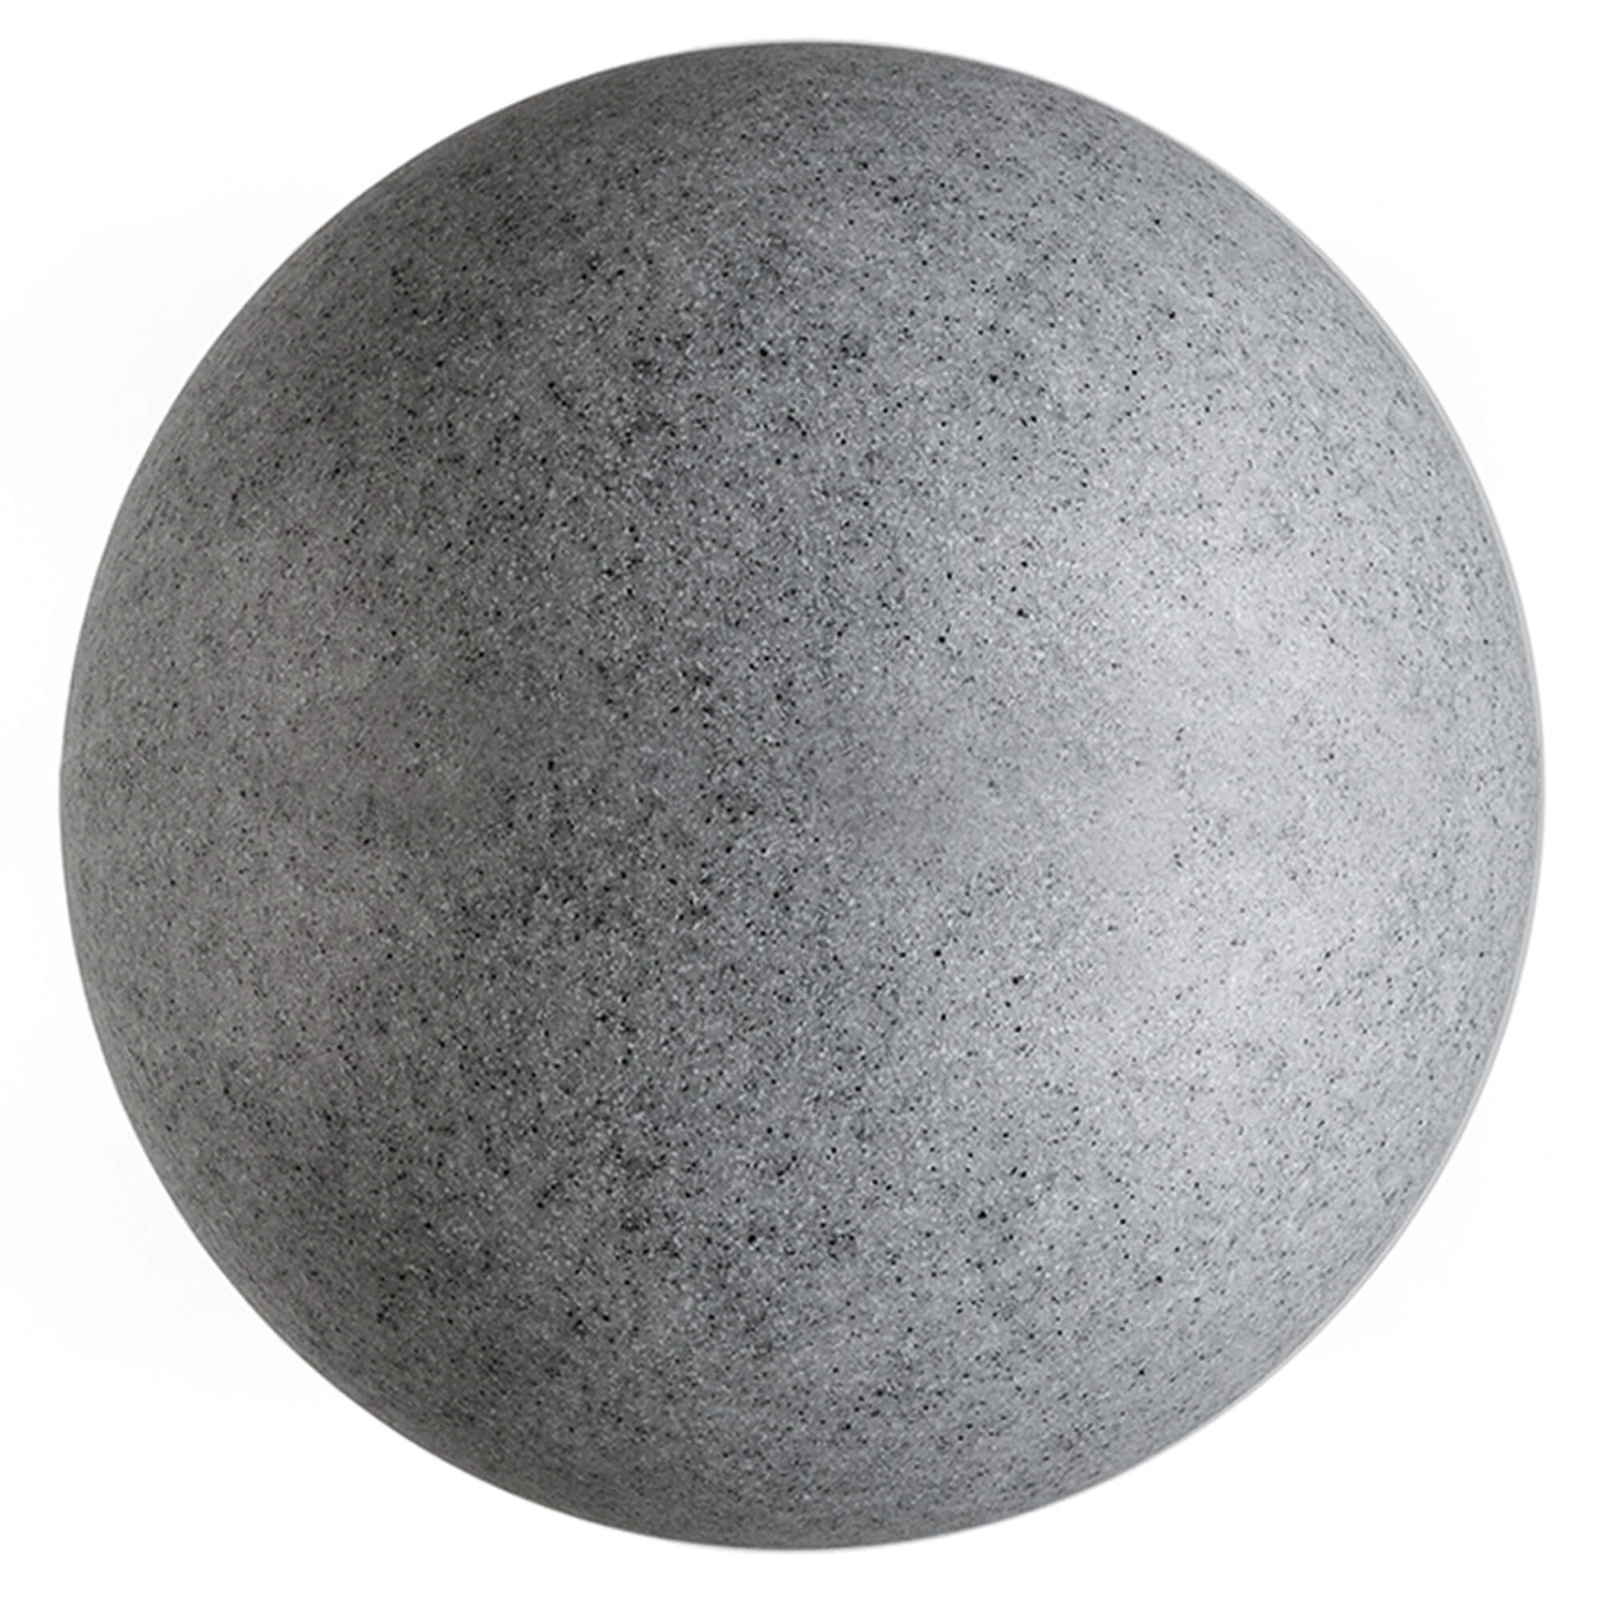 Lâmpada de globo para exterior com espigão, granito, Ø 56cm